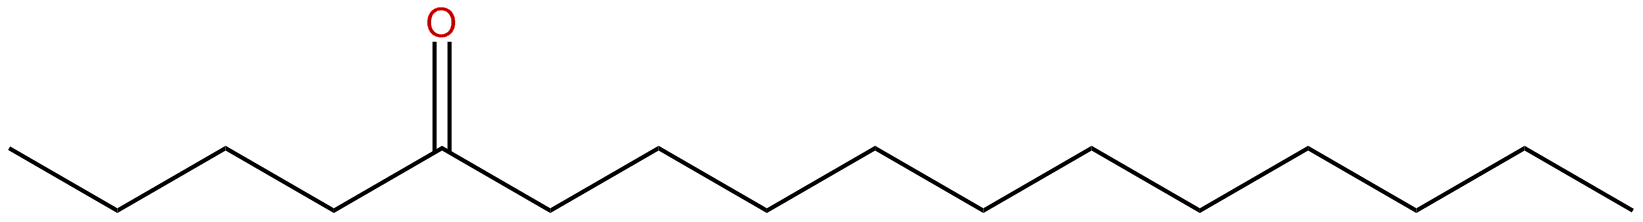 Image of 5-hexadecanone